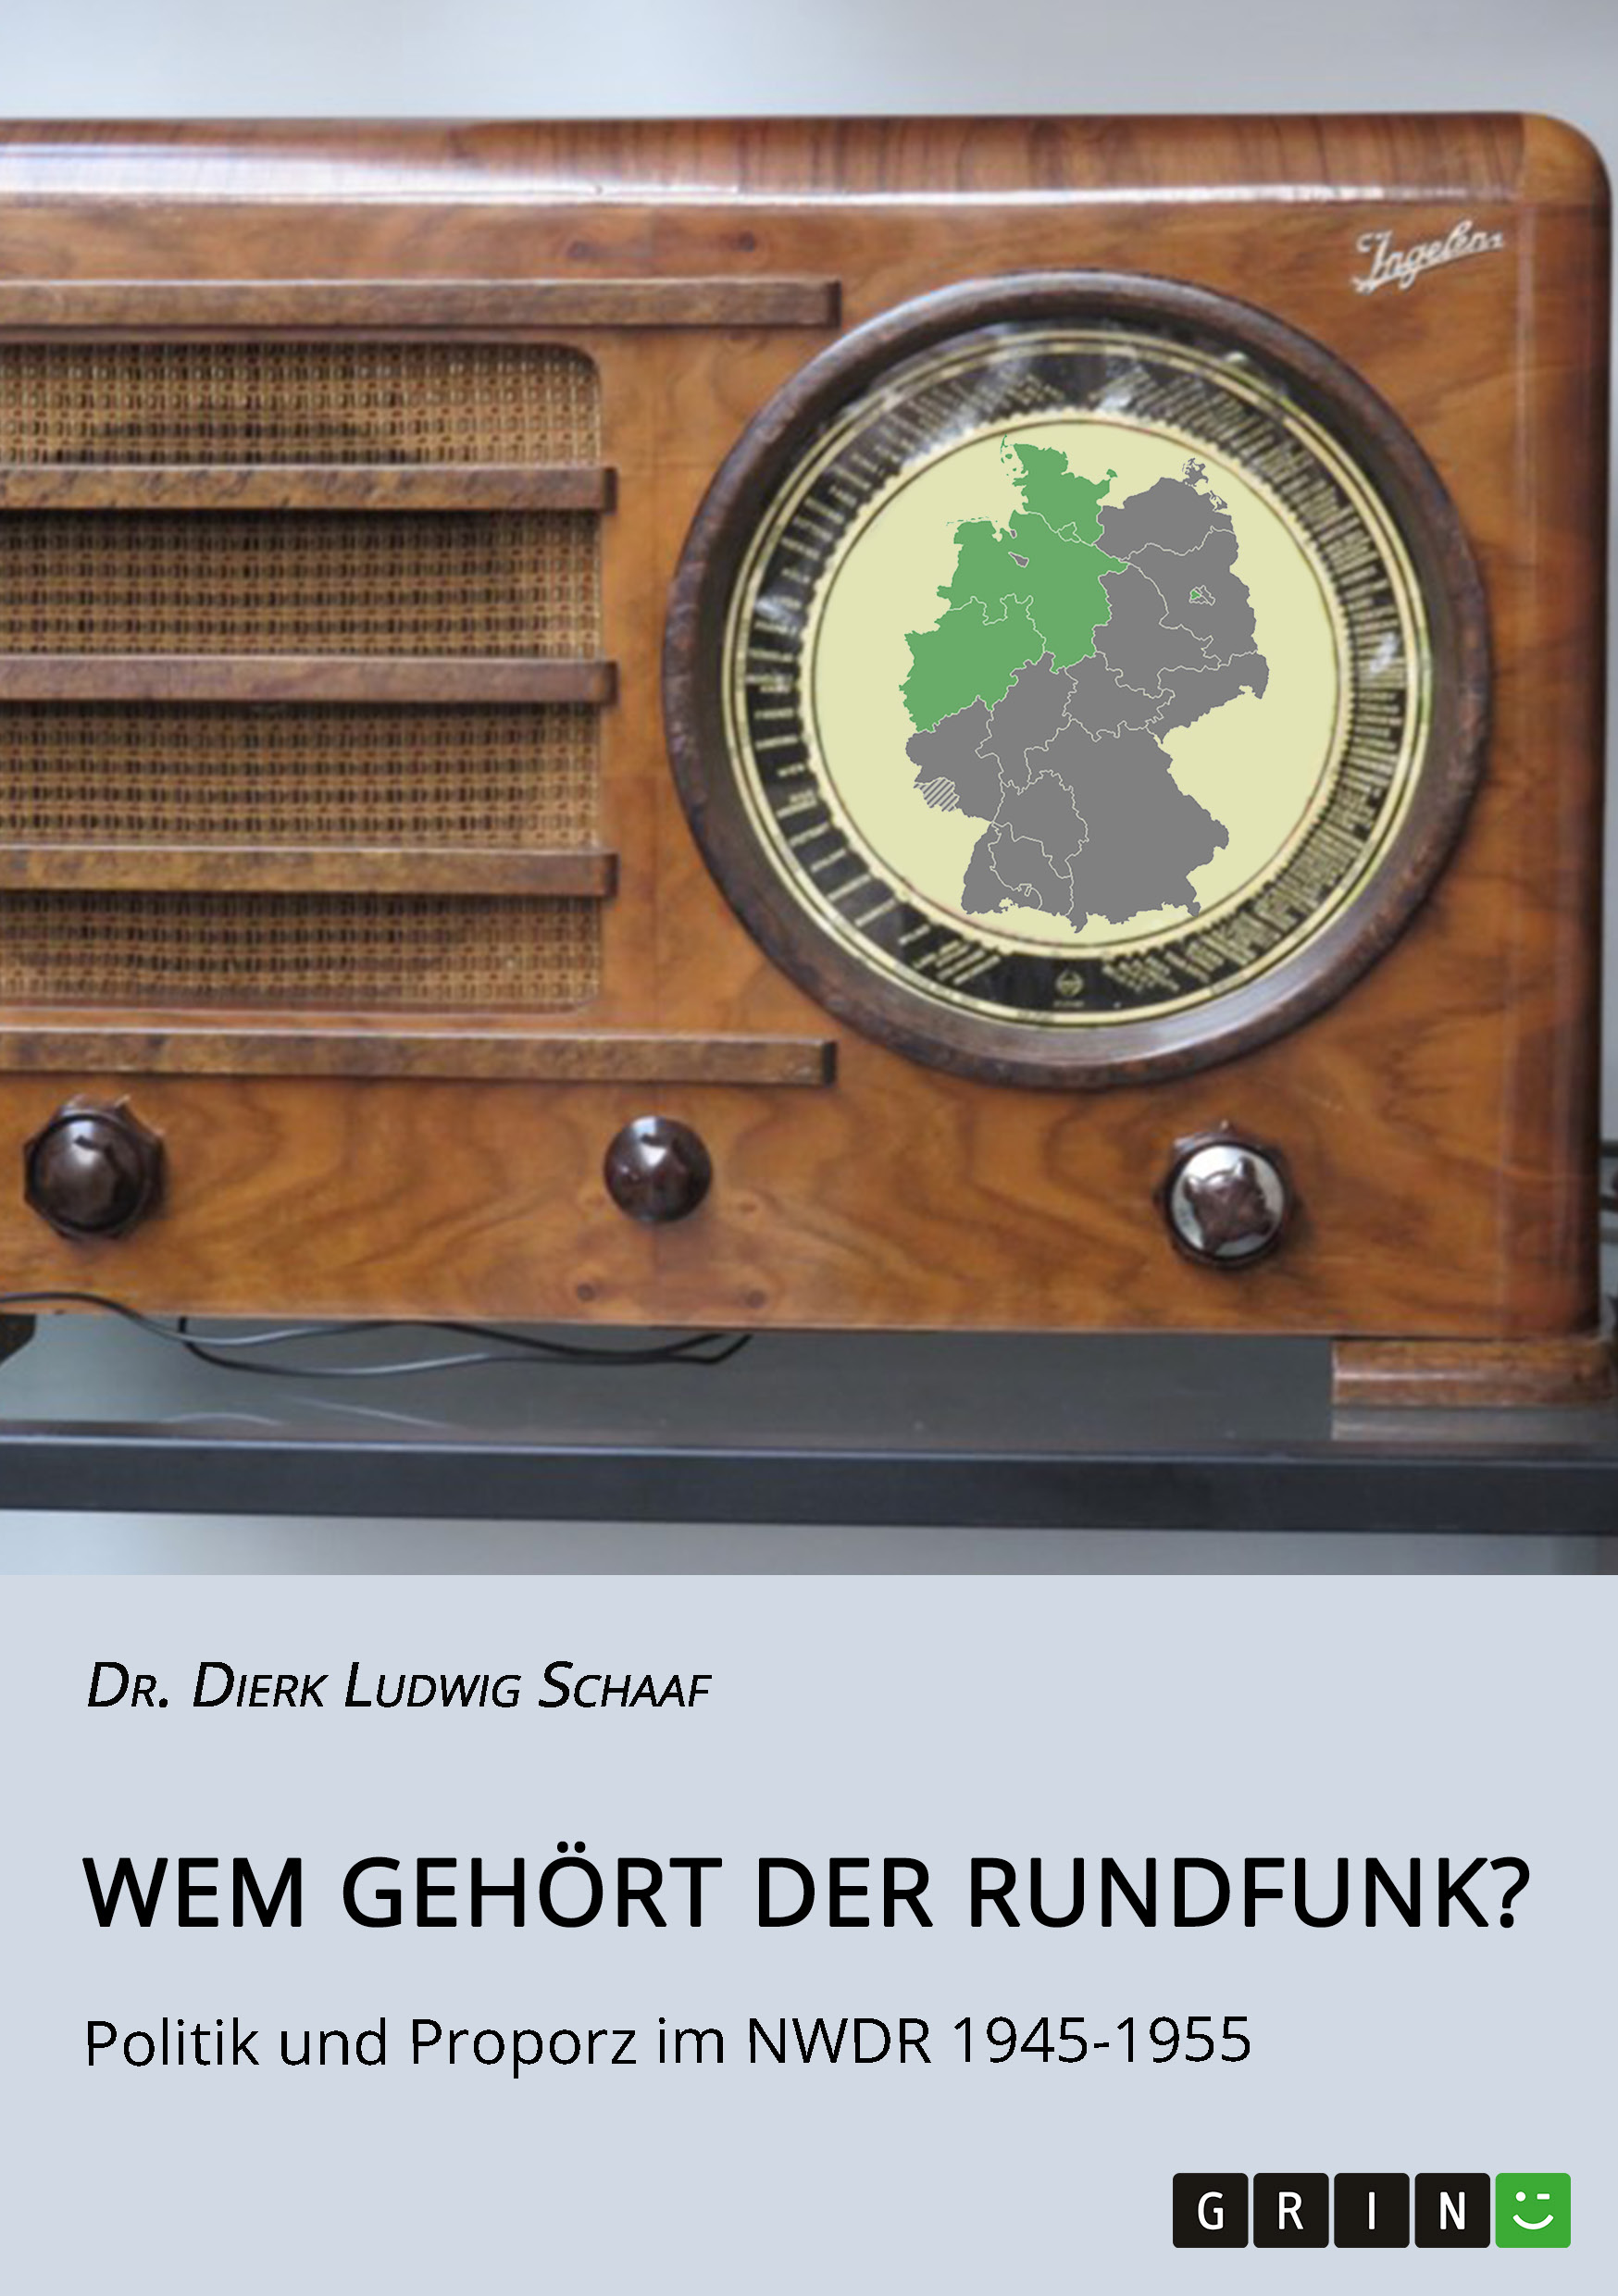 Der deutsche Rundfunk in der Nachkriegszeit: Very British?